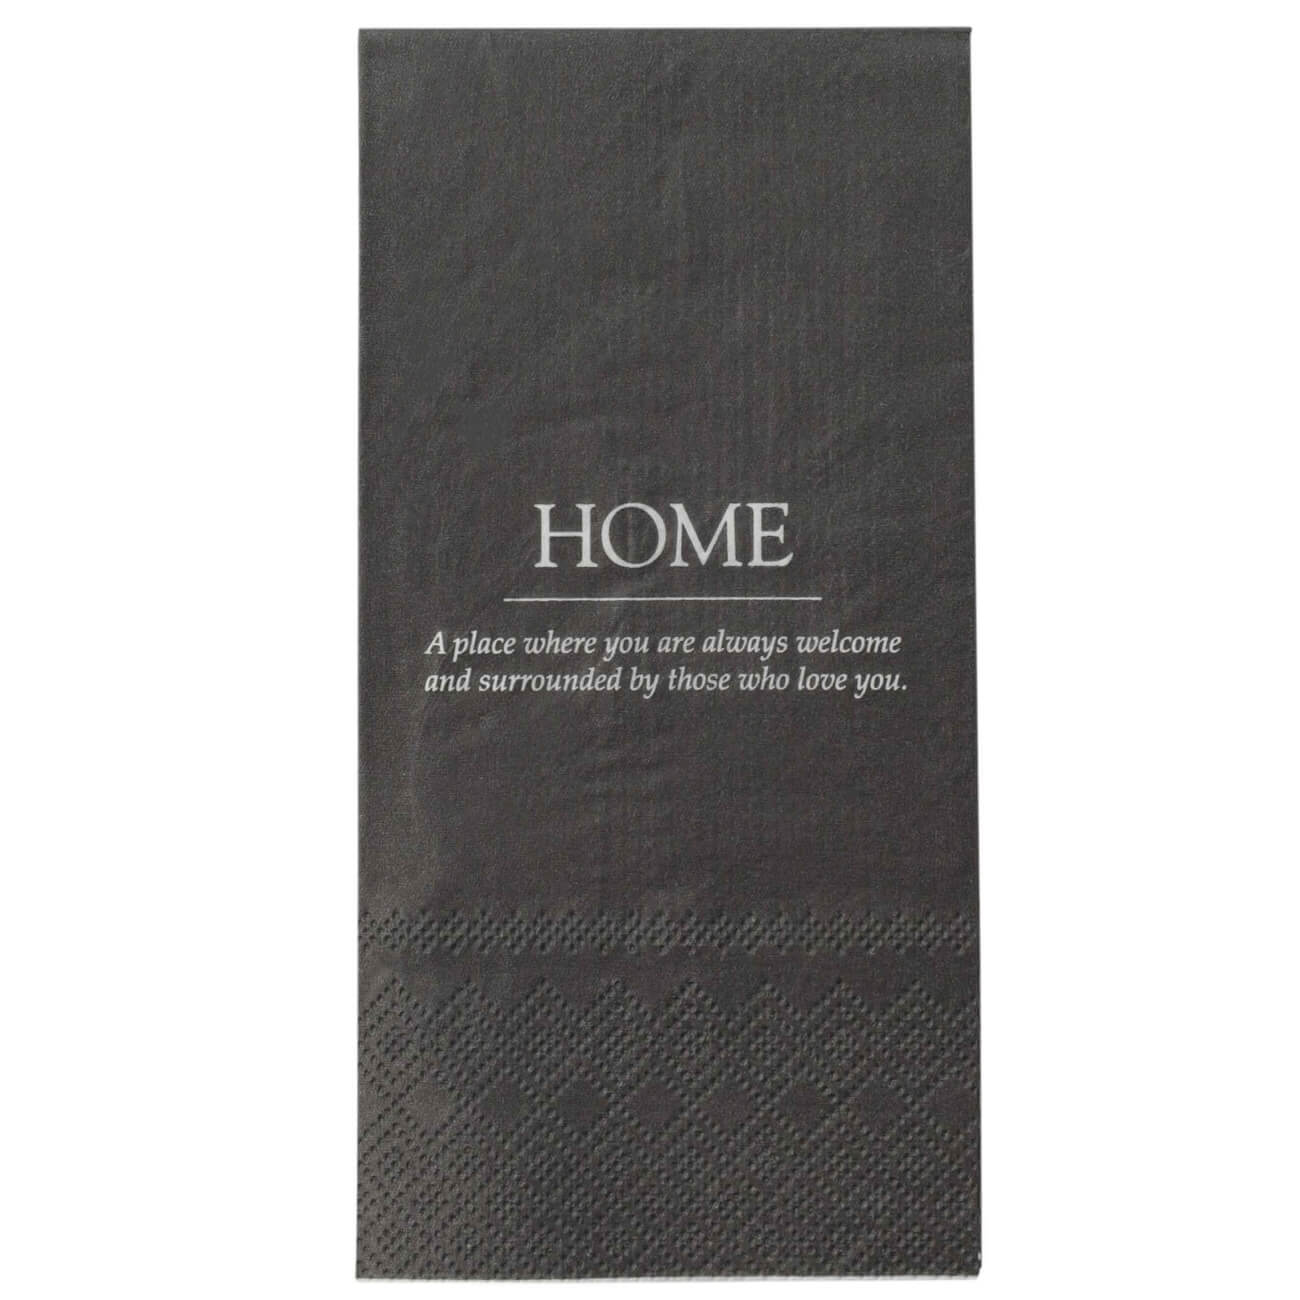 Салфетки бумажные, 33х33 см, 20 шт, прямоугольные, черные, Home, Course изображение № 1